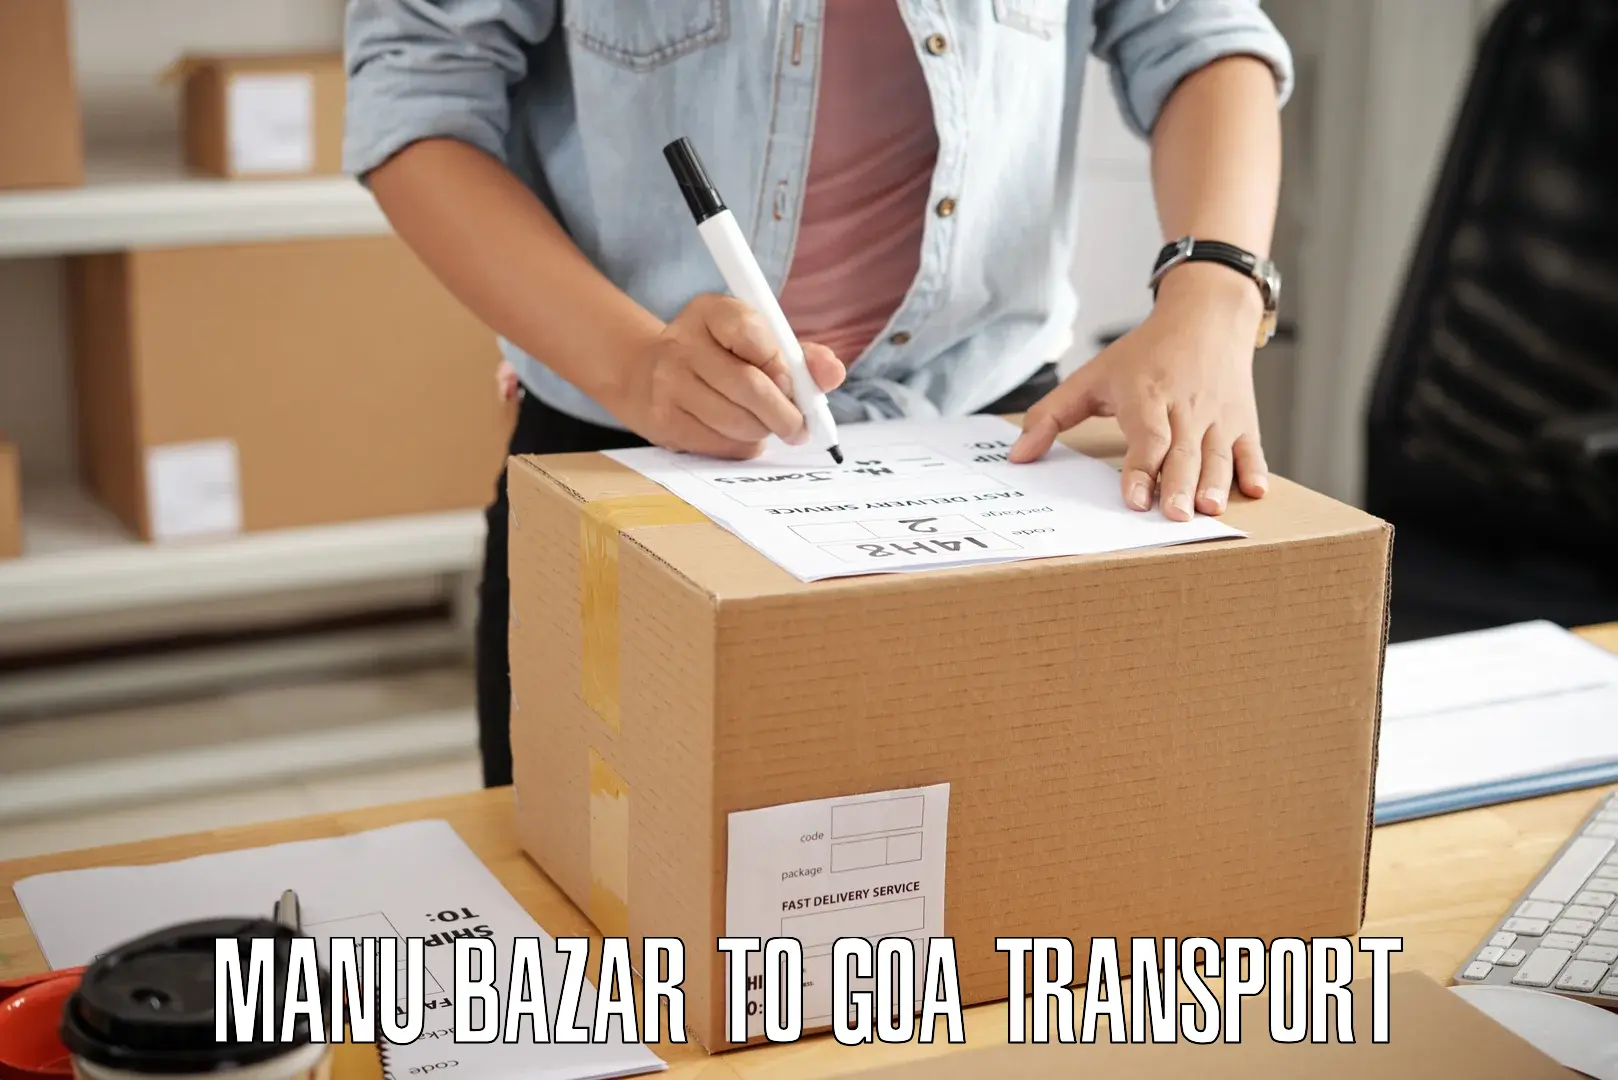 Daily parcel service transport Manu Bazar to Goa University